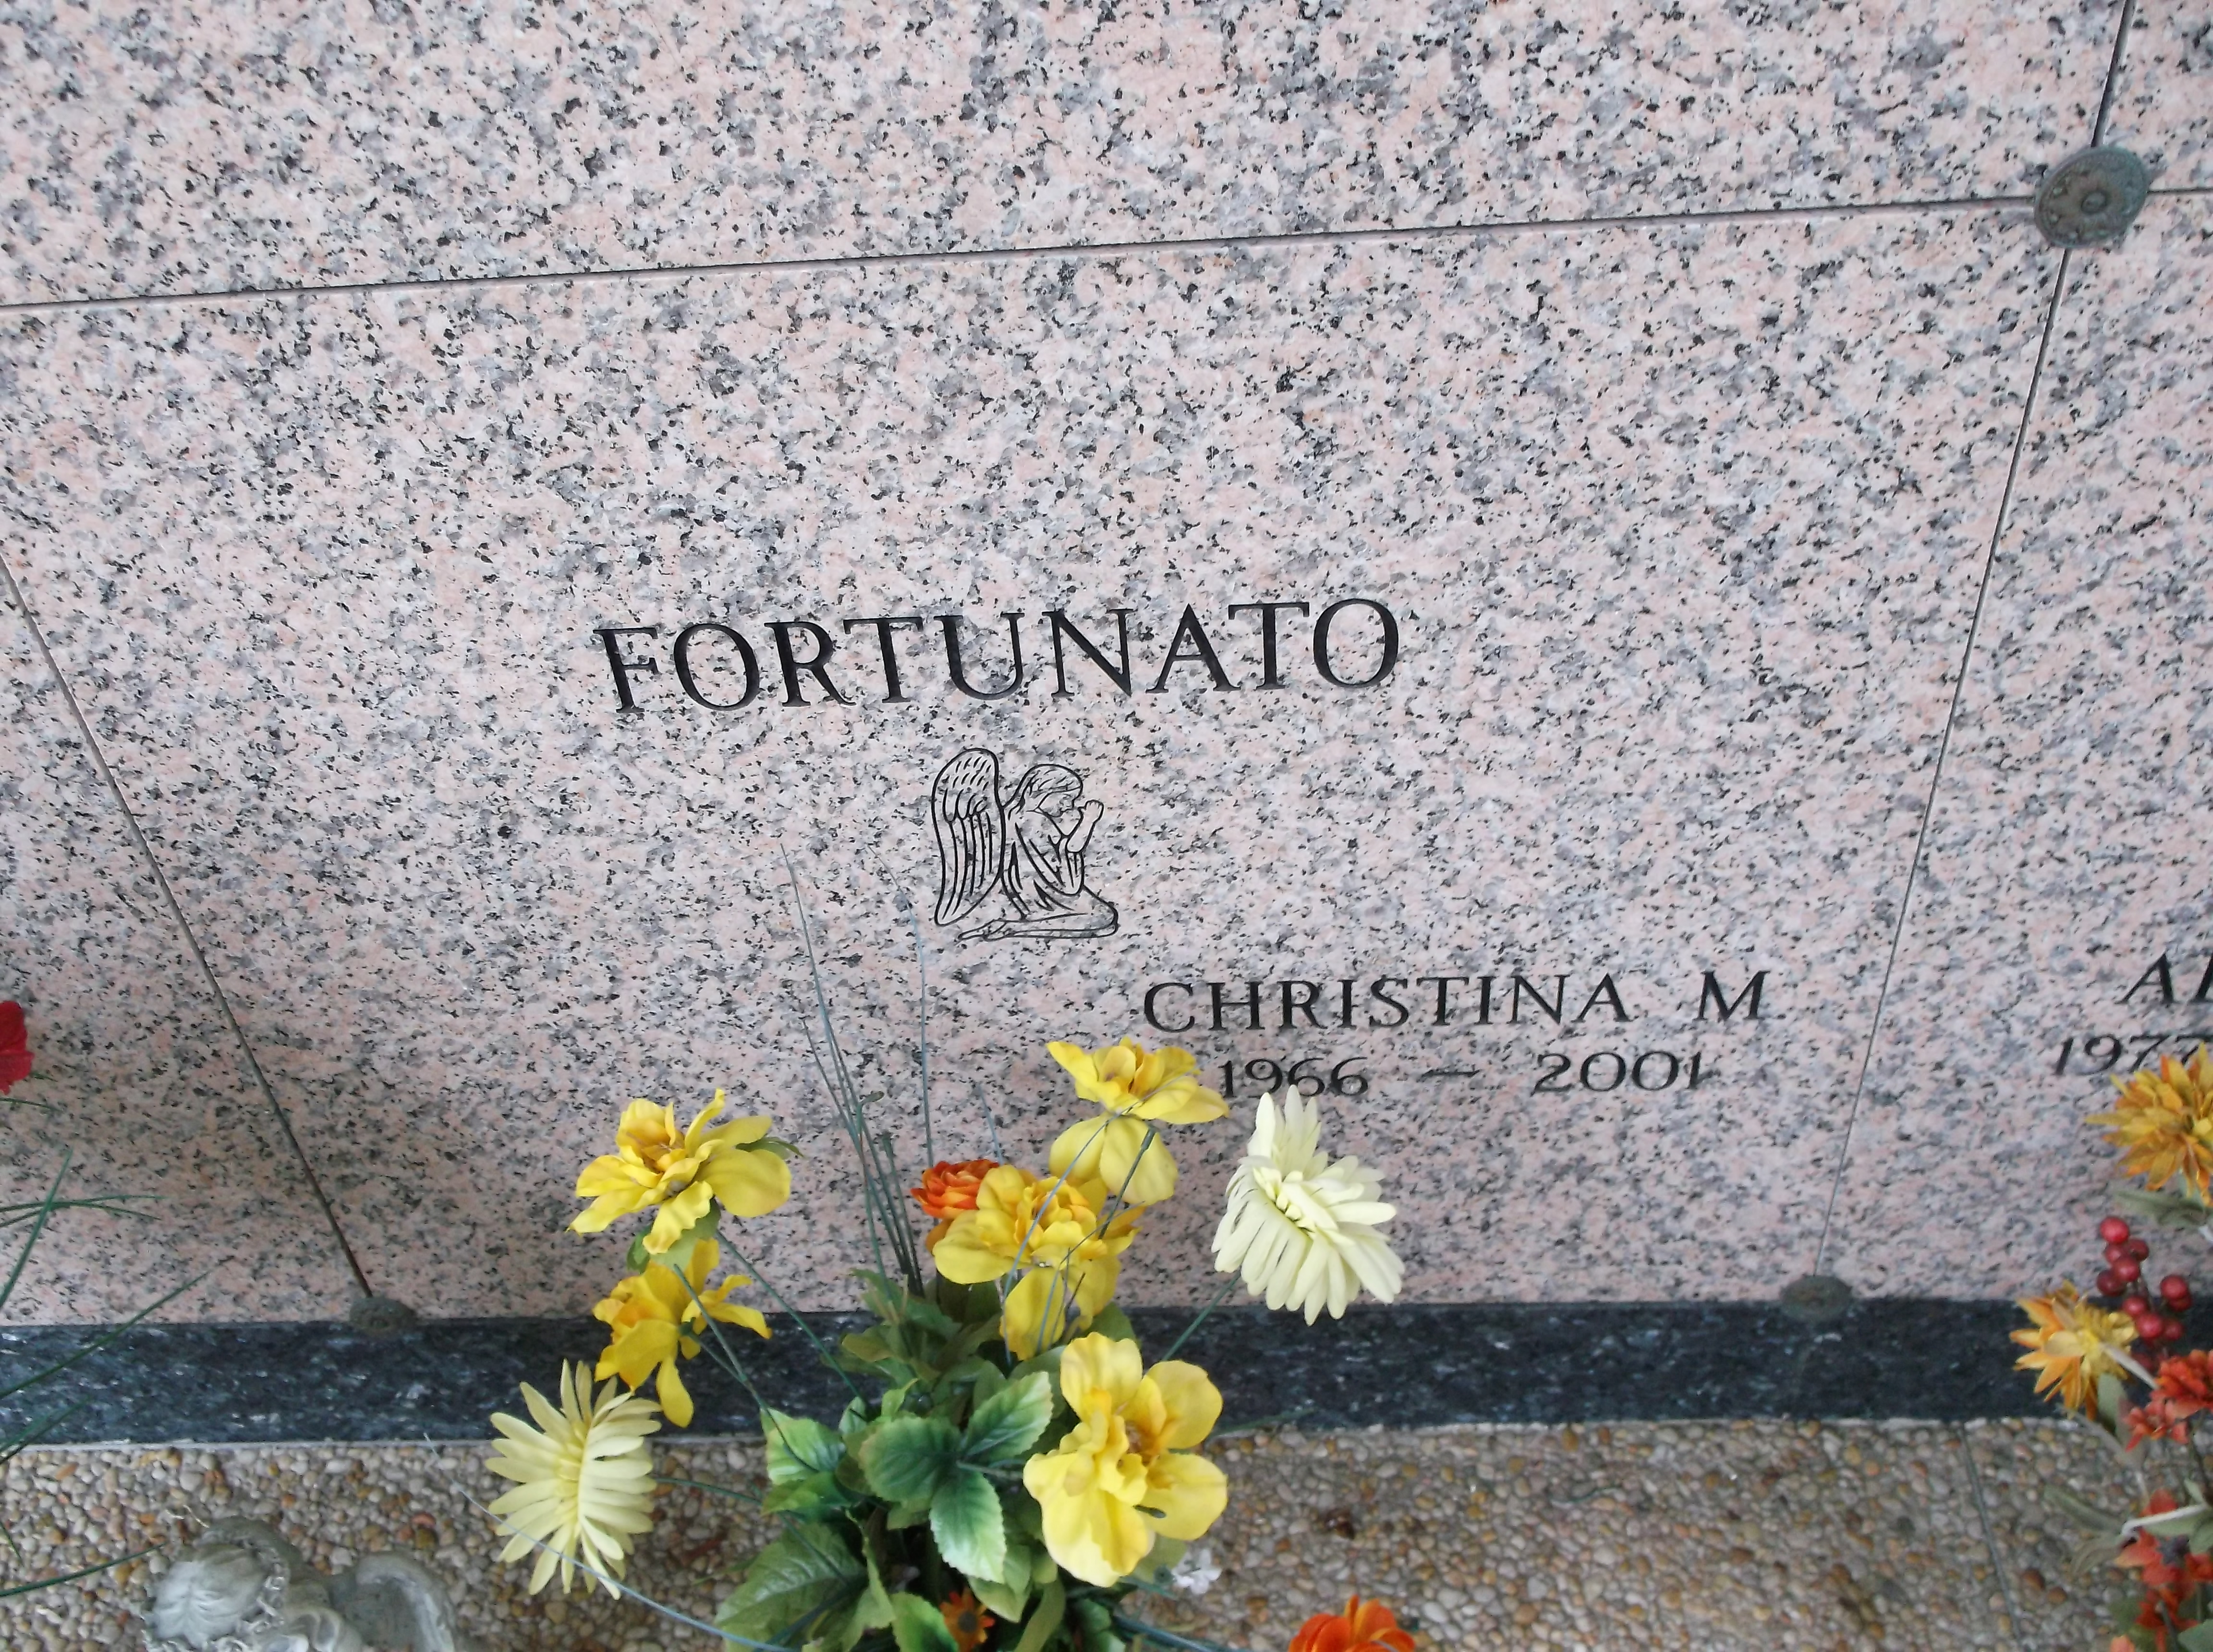 Christina M Fortunato